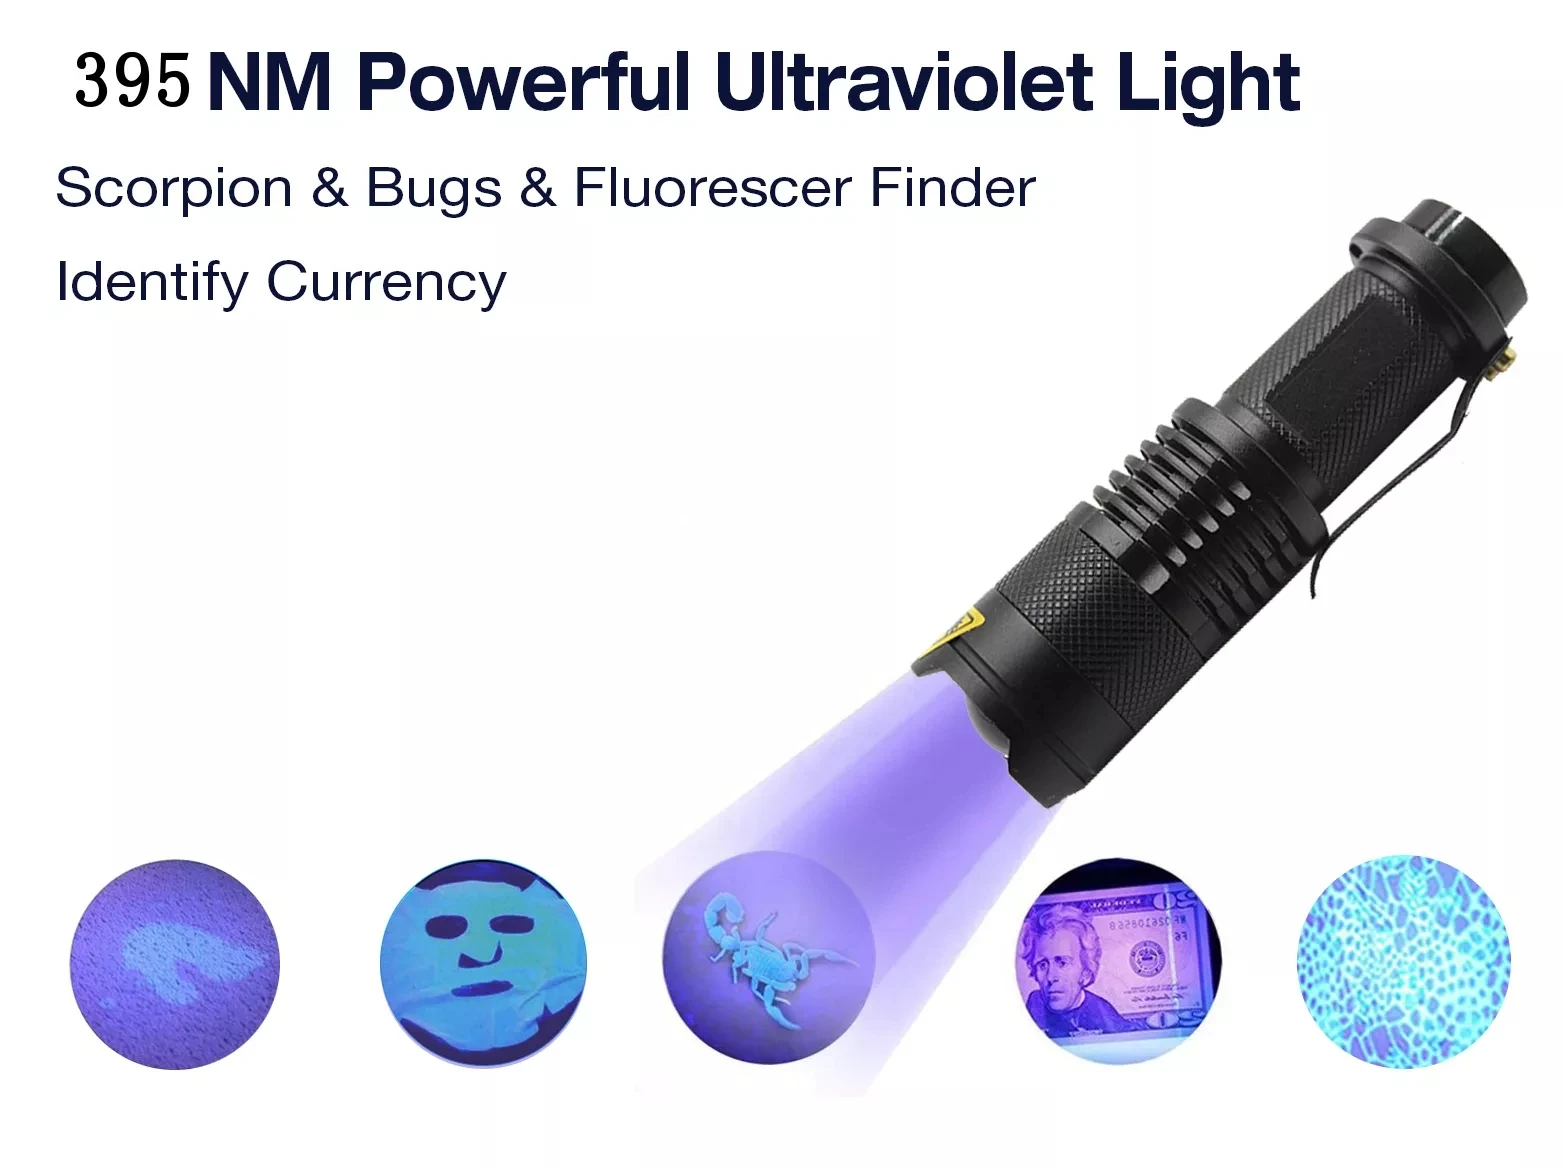 УФ-светильник-вспышка, фиолетовый светильник с функцией масштабирования, мини-УФ-черный светильник, детектор пятен в моче для домашних животных, с функцией скорпиона, с батареей AA/14500